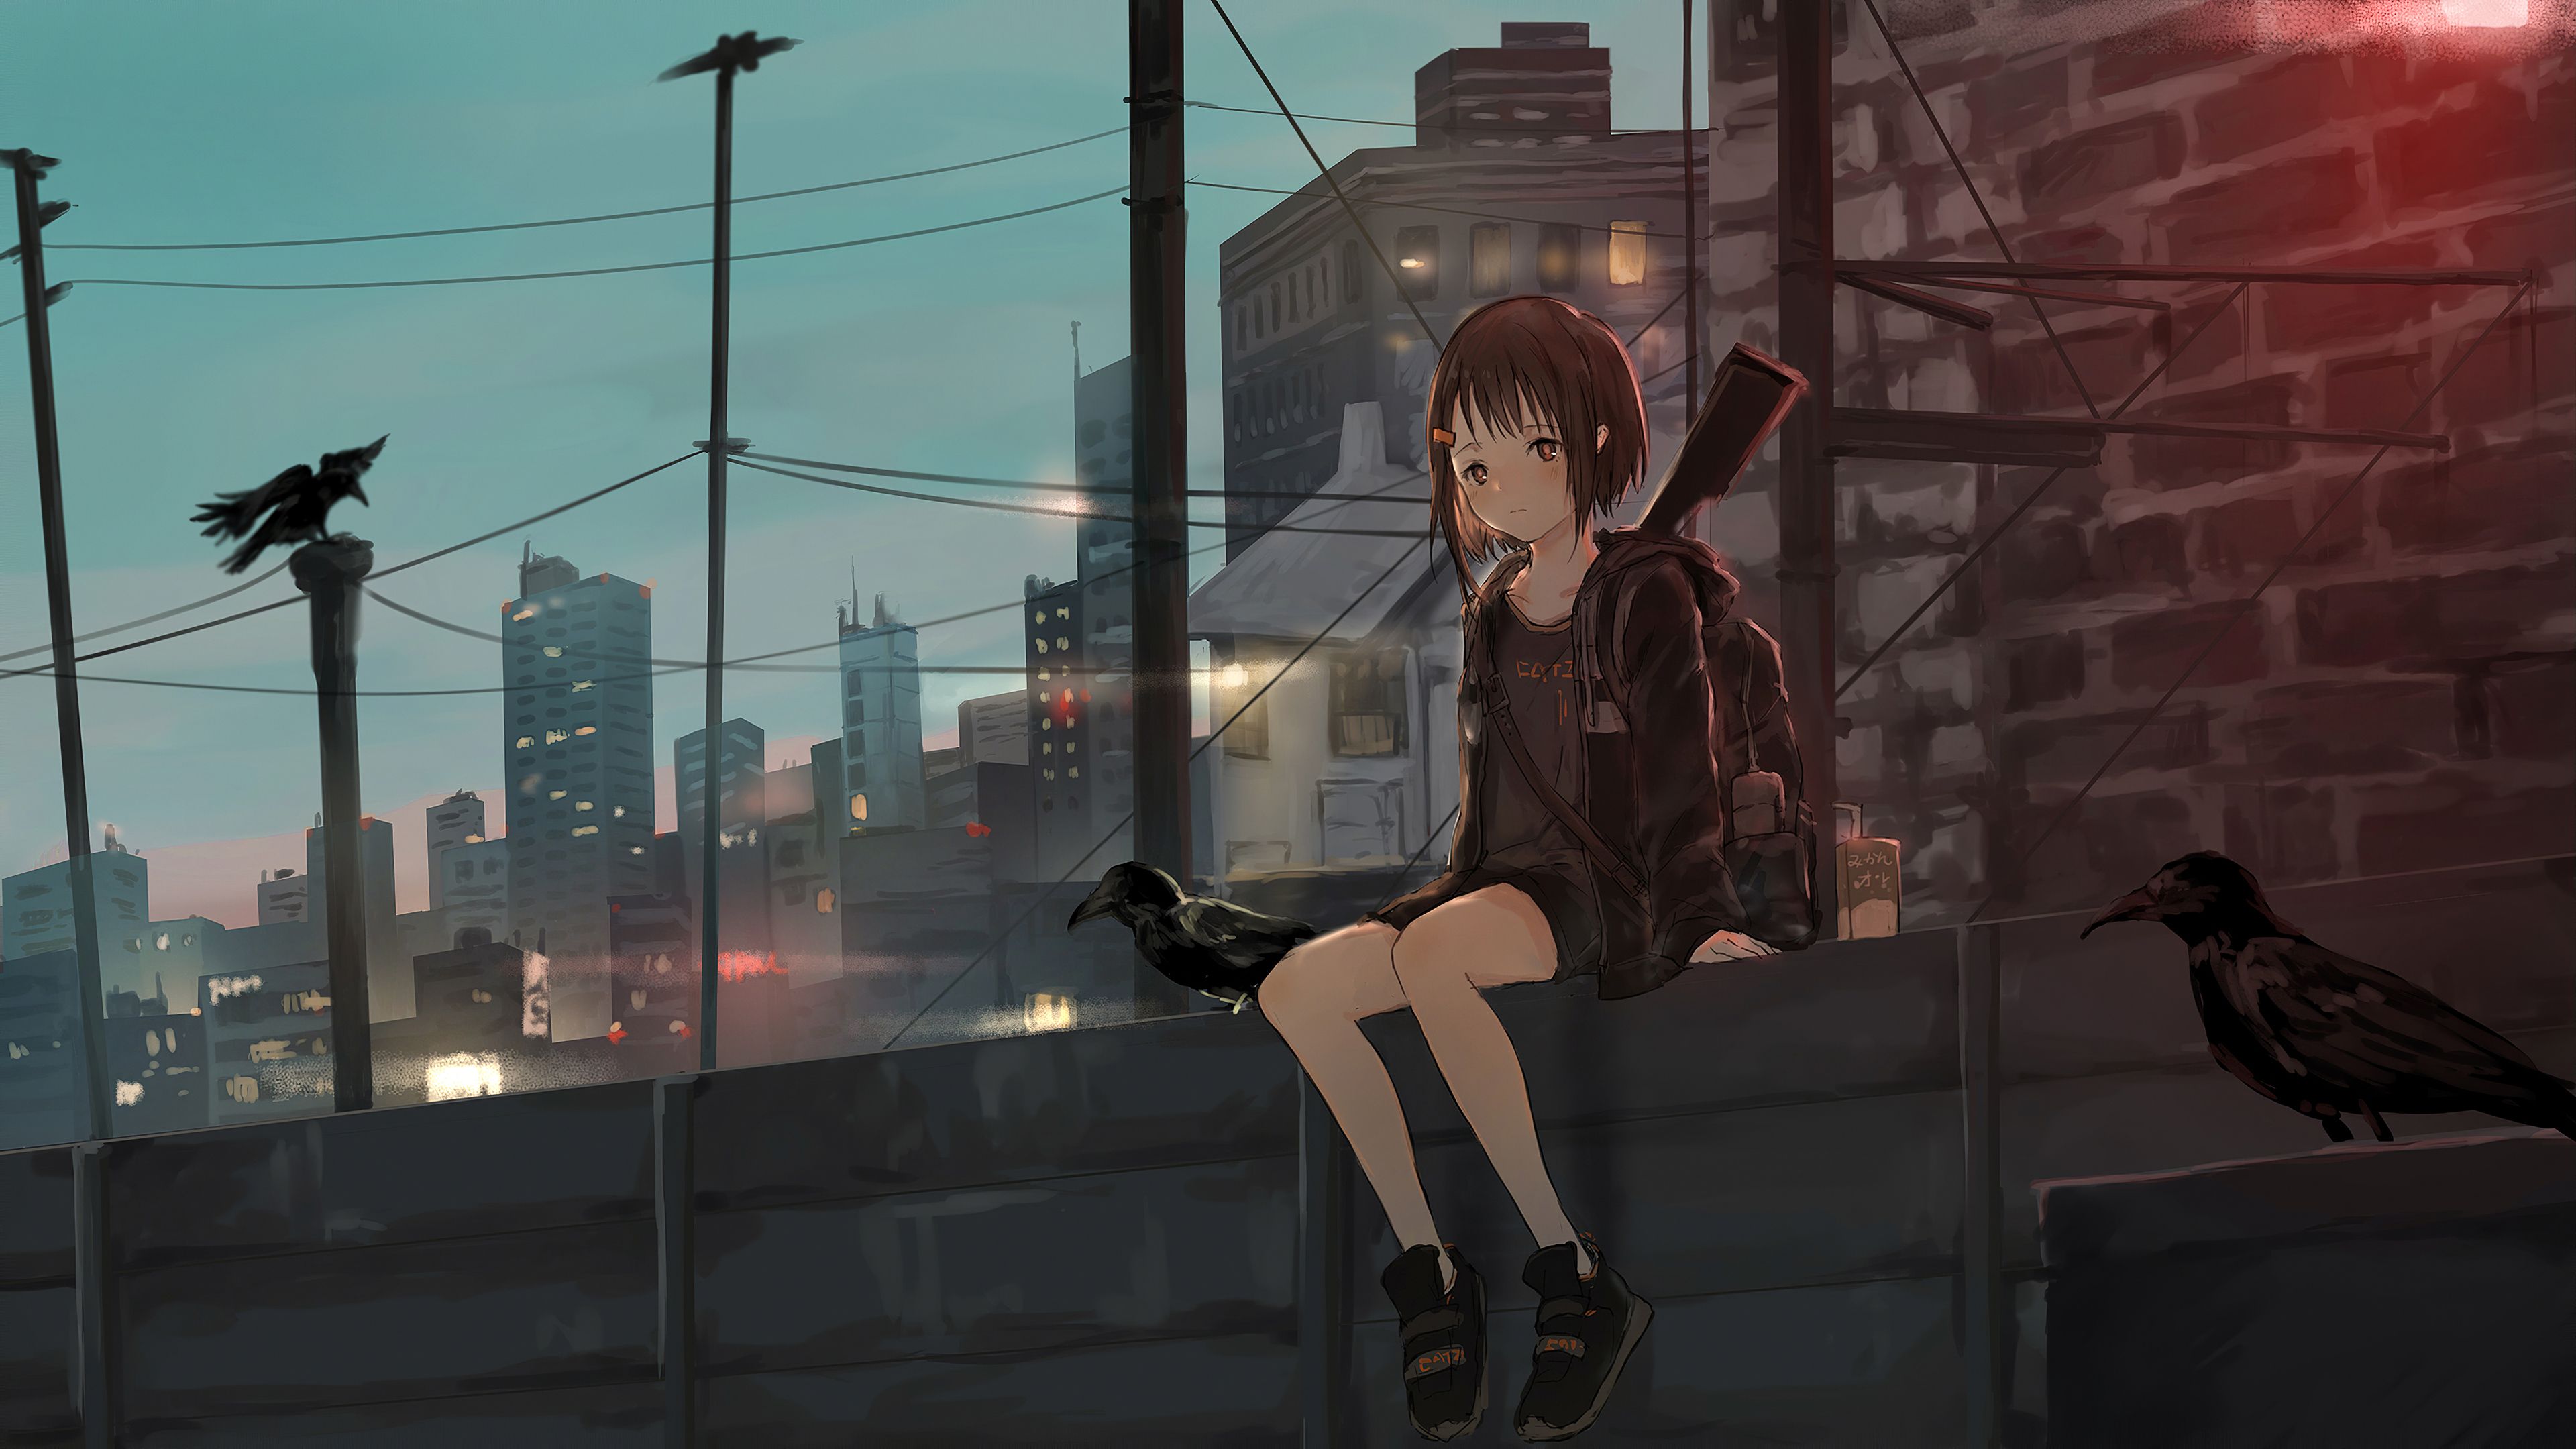 Sad anime girl HD wallpaper download